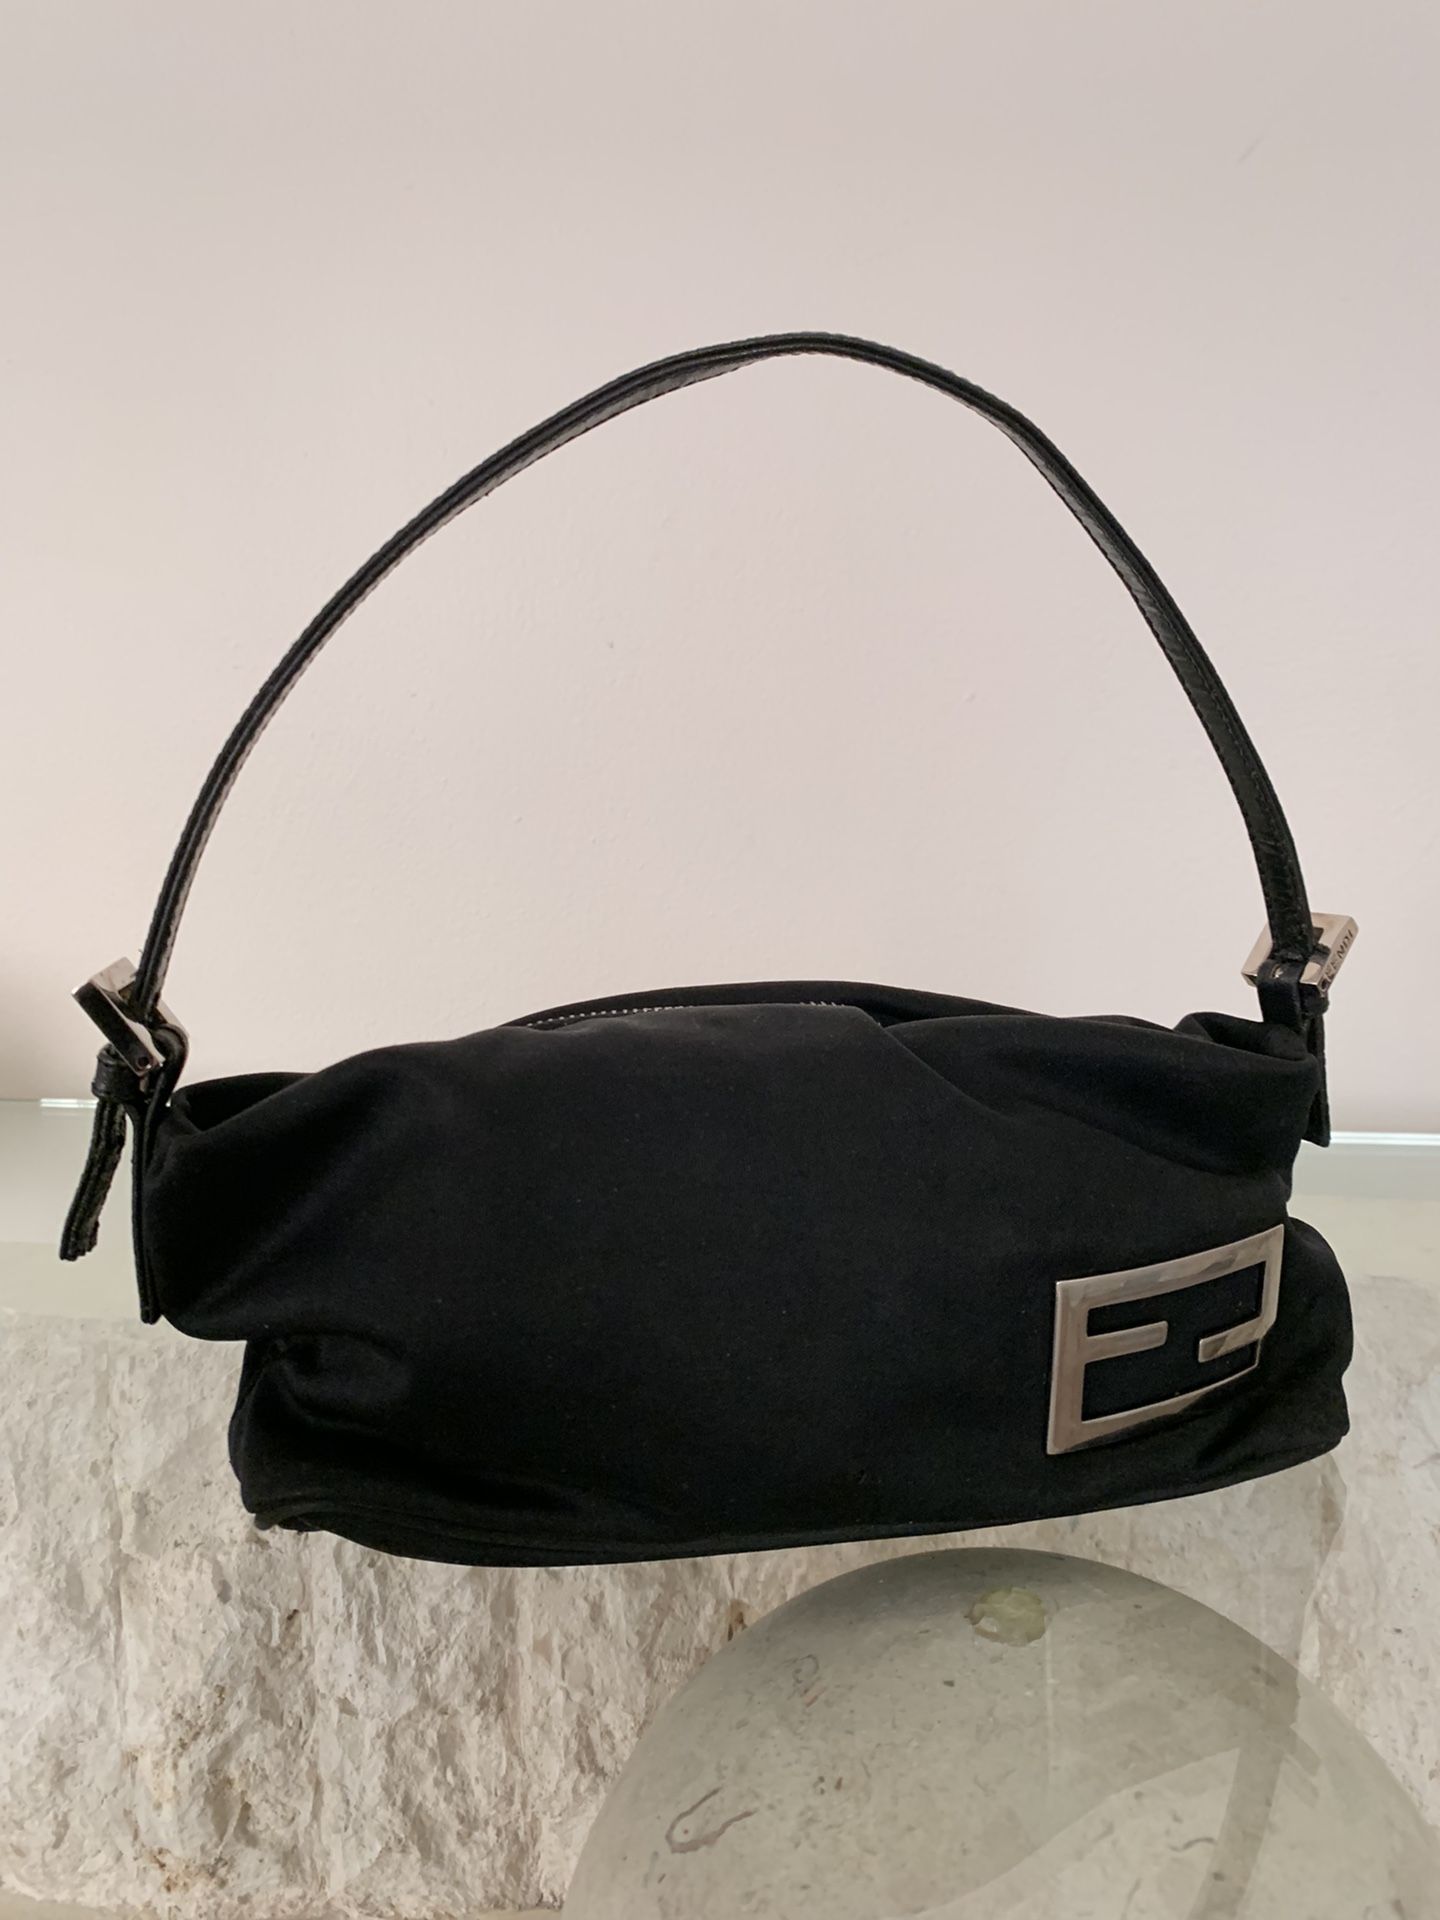 Fendi Black Nylon Neoprene Pochette Mini Shoulder Bag Purse